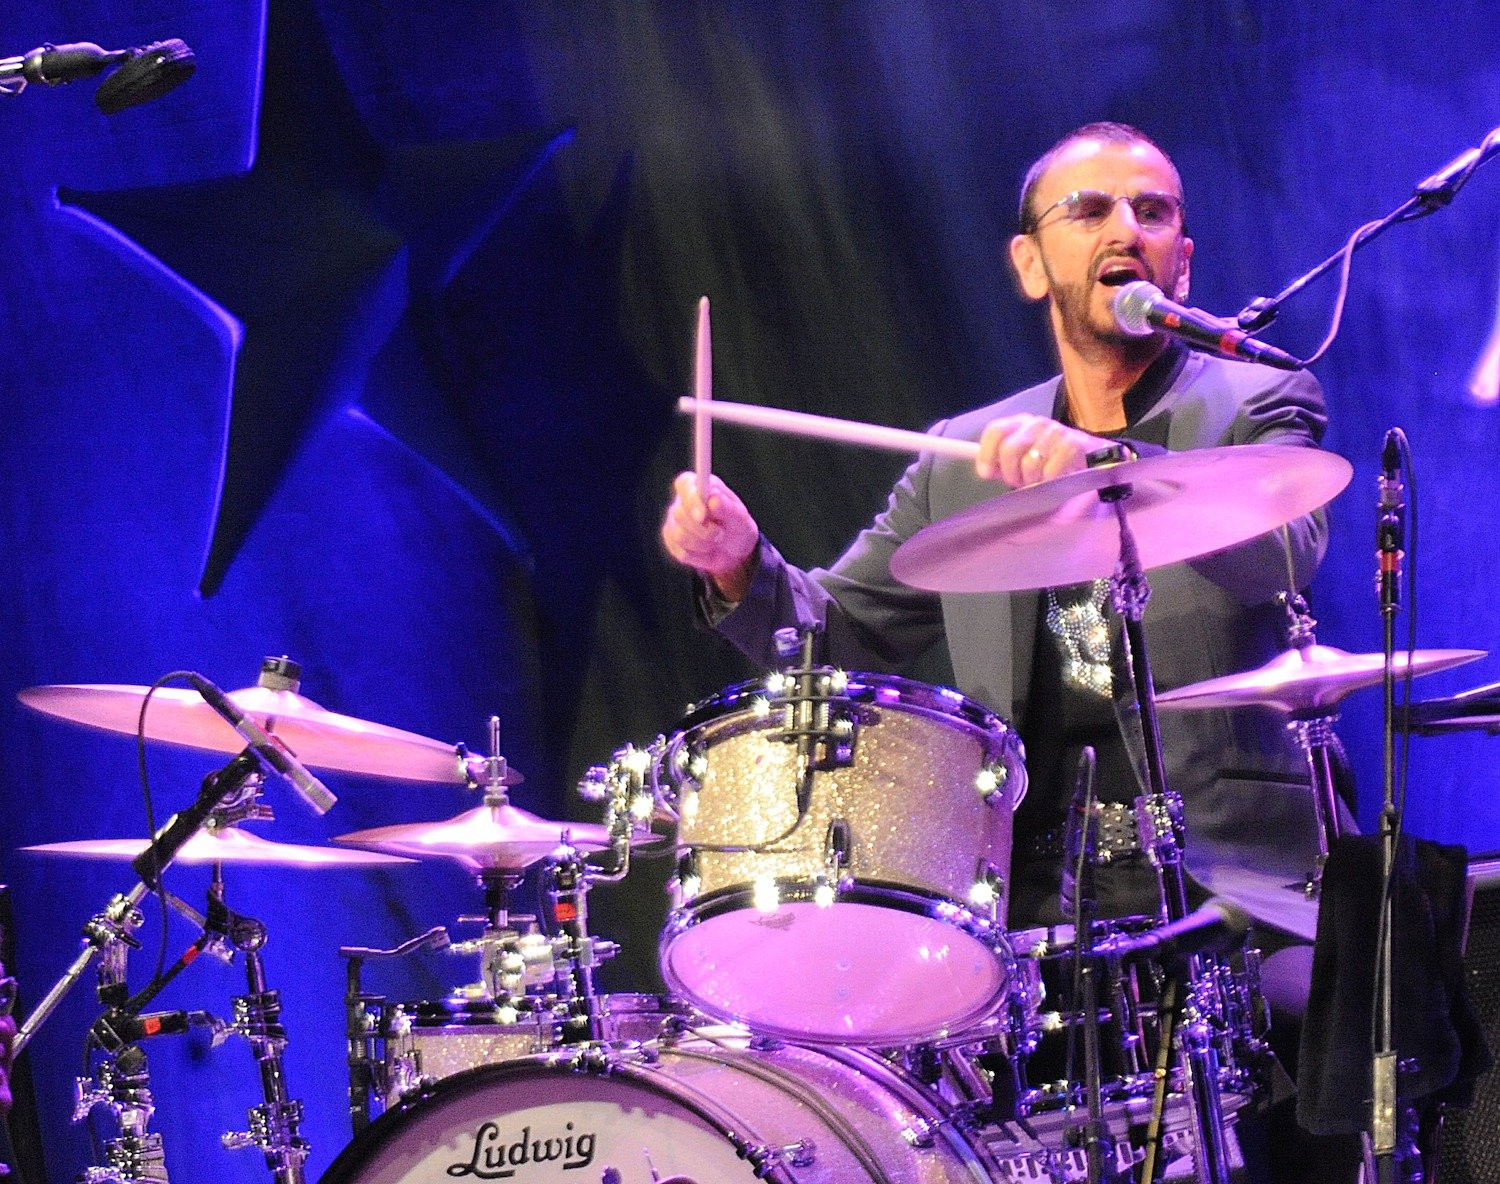 Ringo Starr Mengatakan Dia Tidak Pernah Berlatih Memainkan Drum, 'I Just Have Great Time'